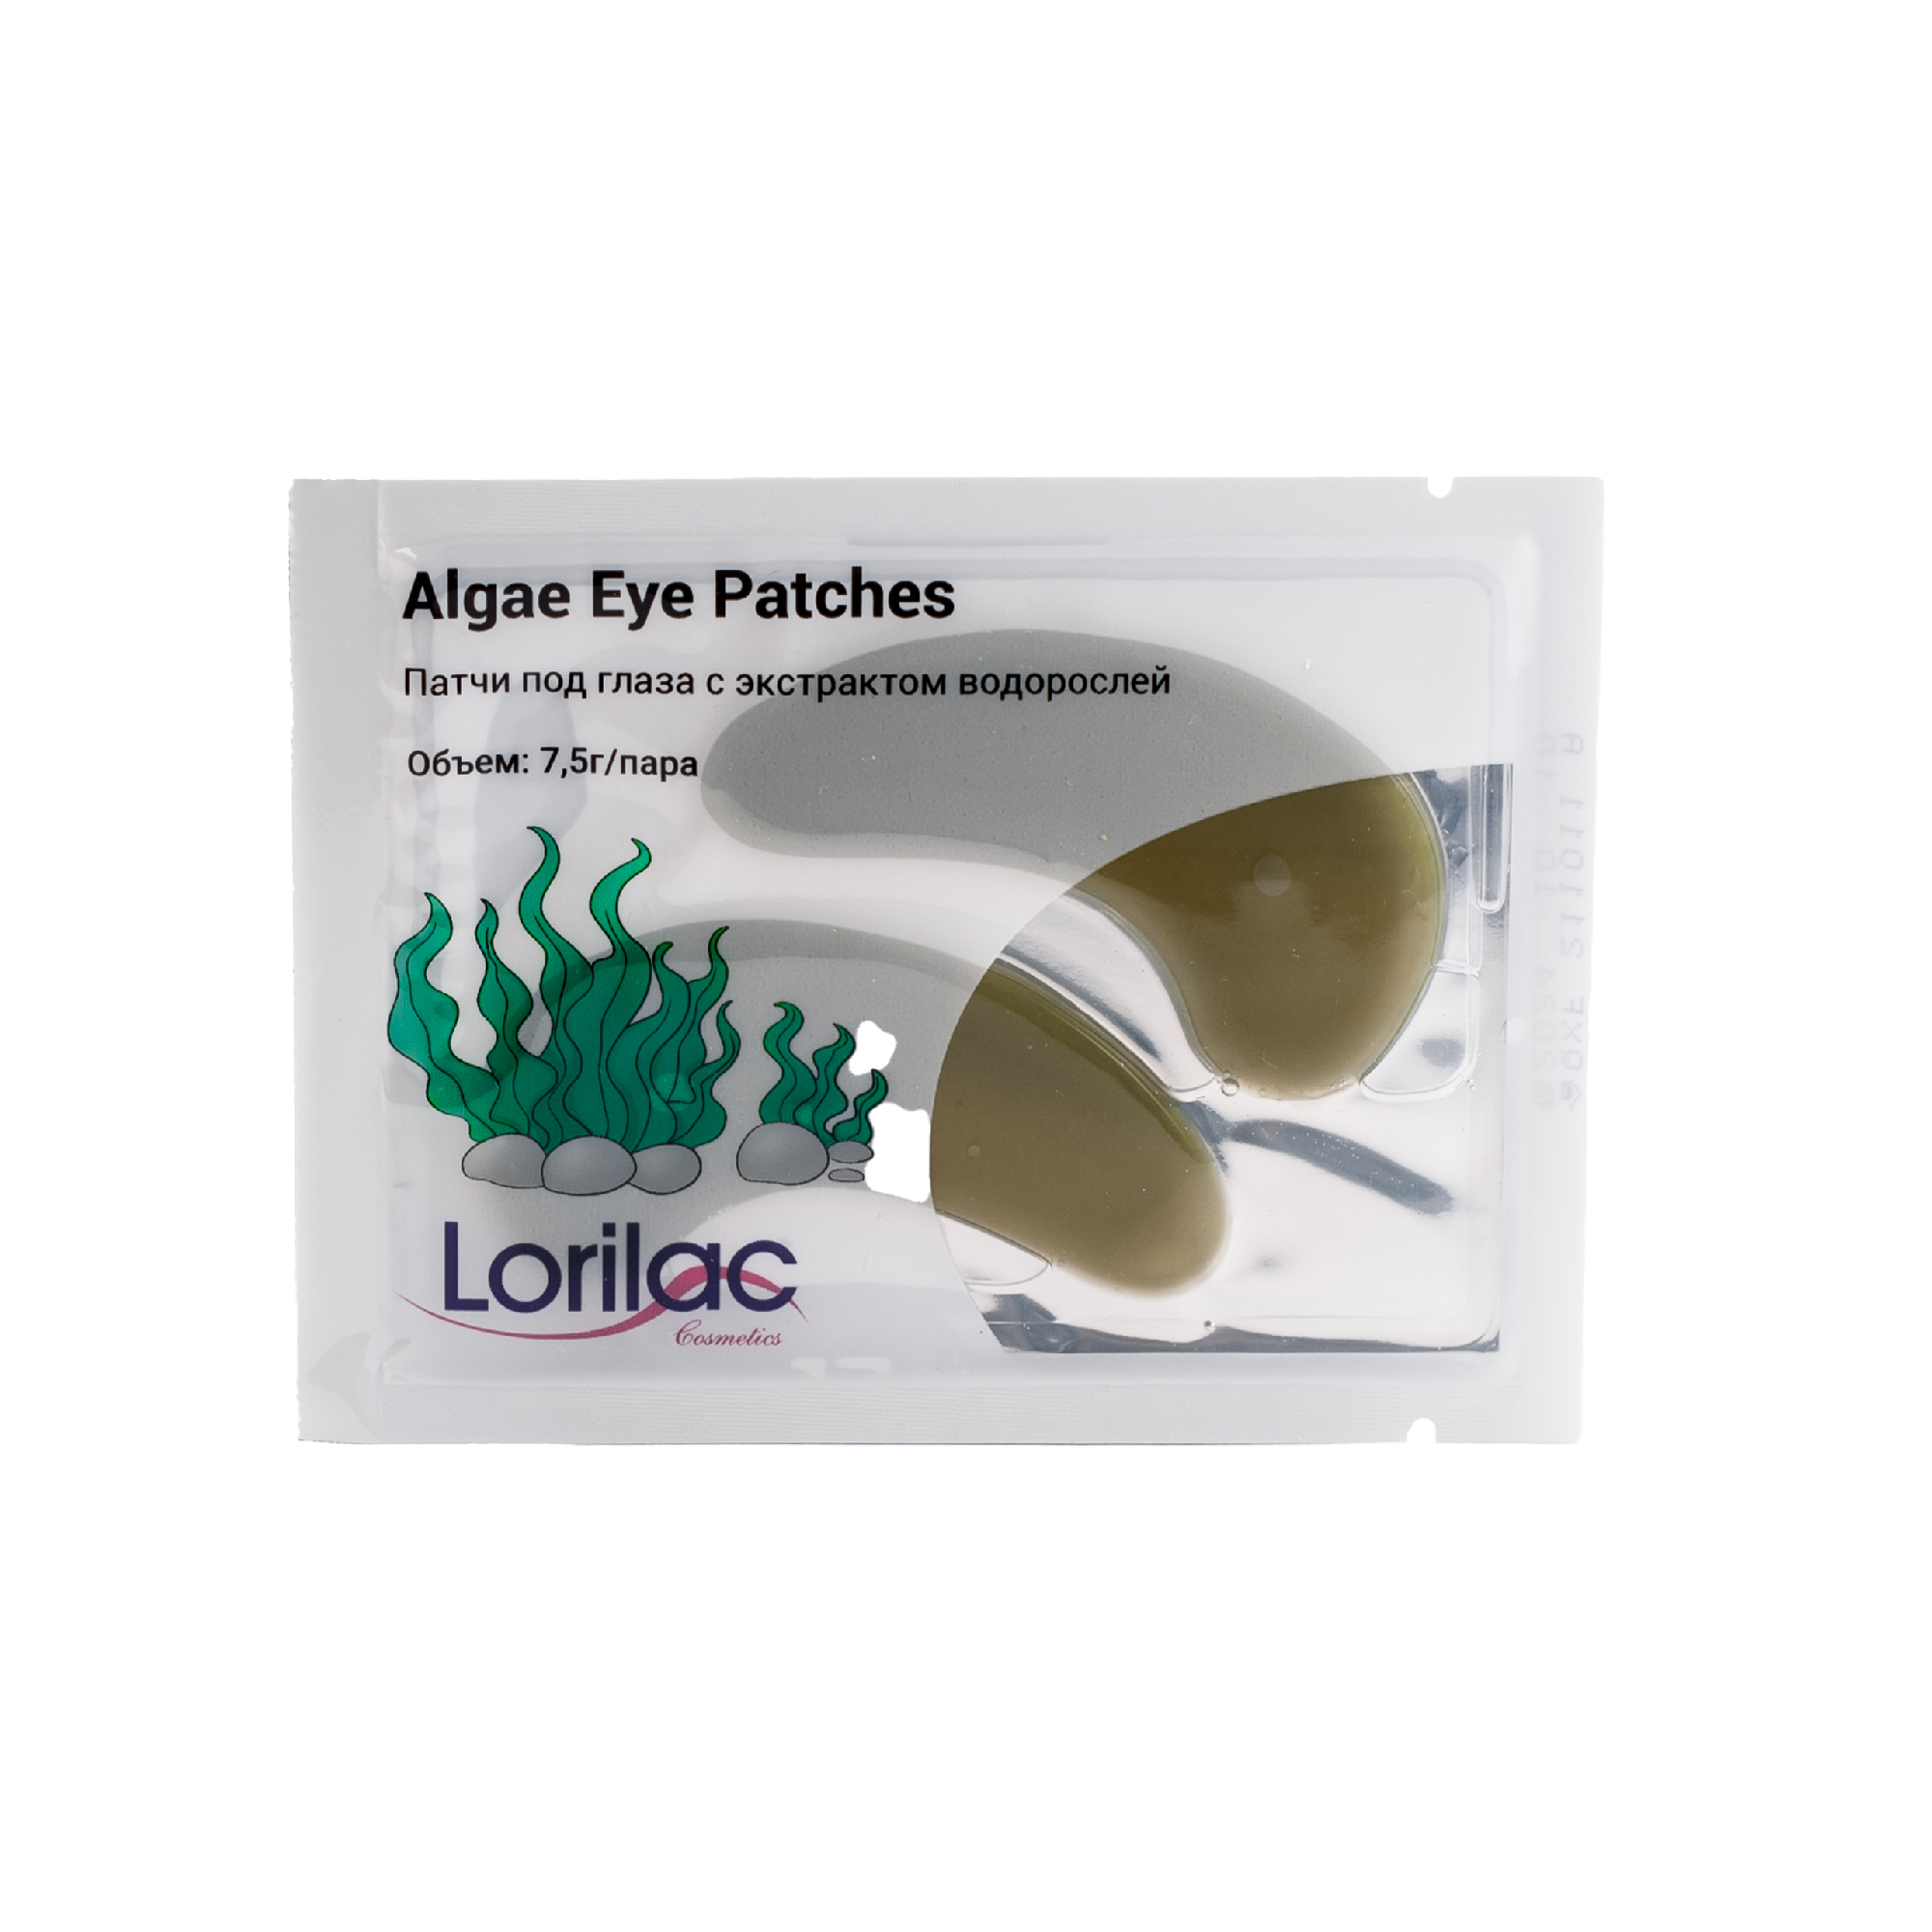 фото Патчи для глаз lorilac с экстрактом водорослей algae eye patches 7.5 г